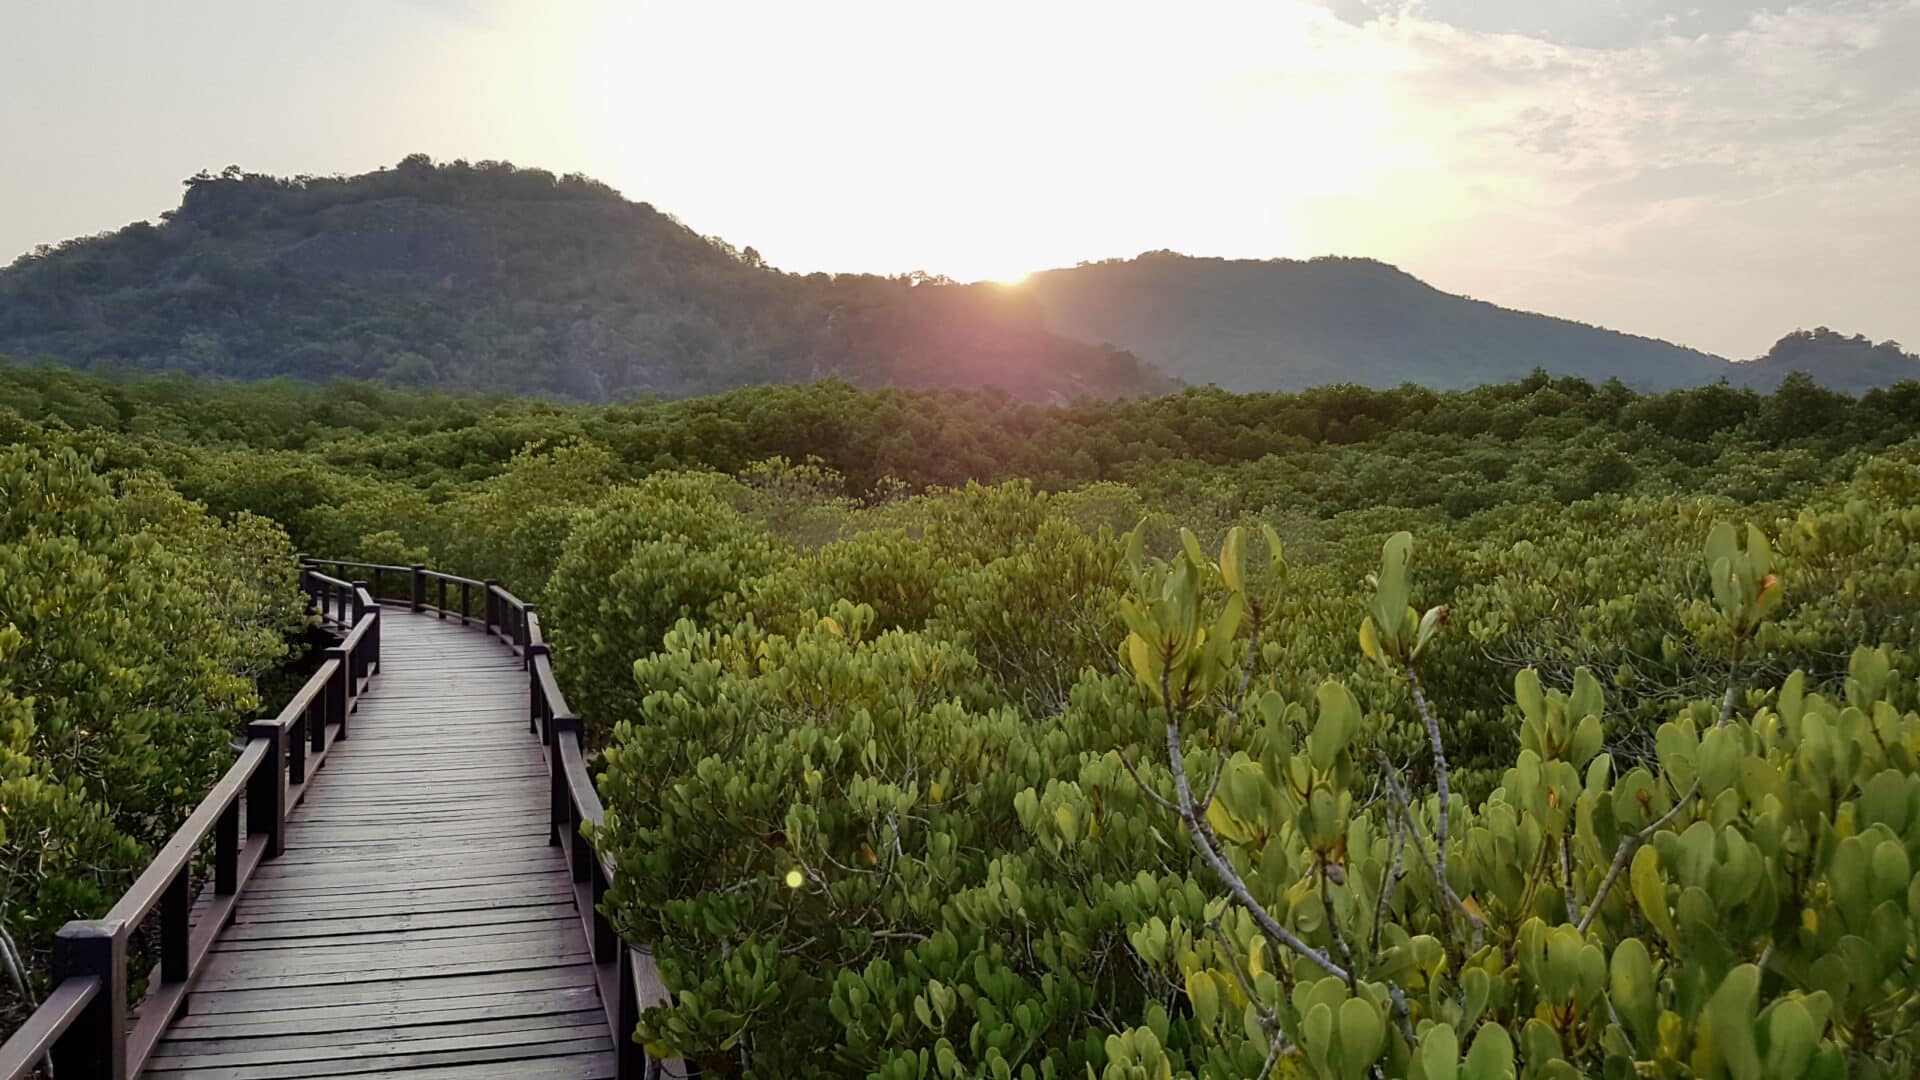 เส้นทางเดินศึกษาธรรมชาติป่าชายเลน วนอุทยานปราณบุรี